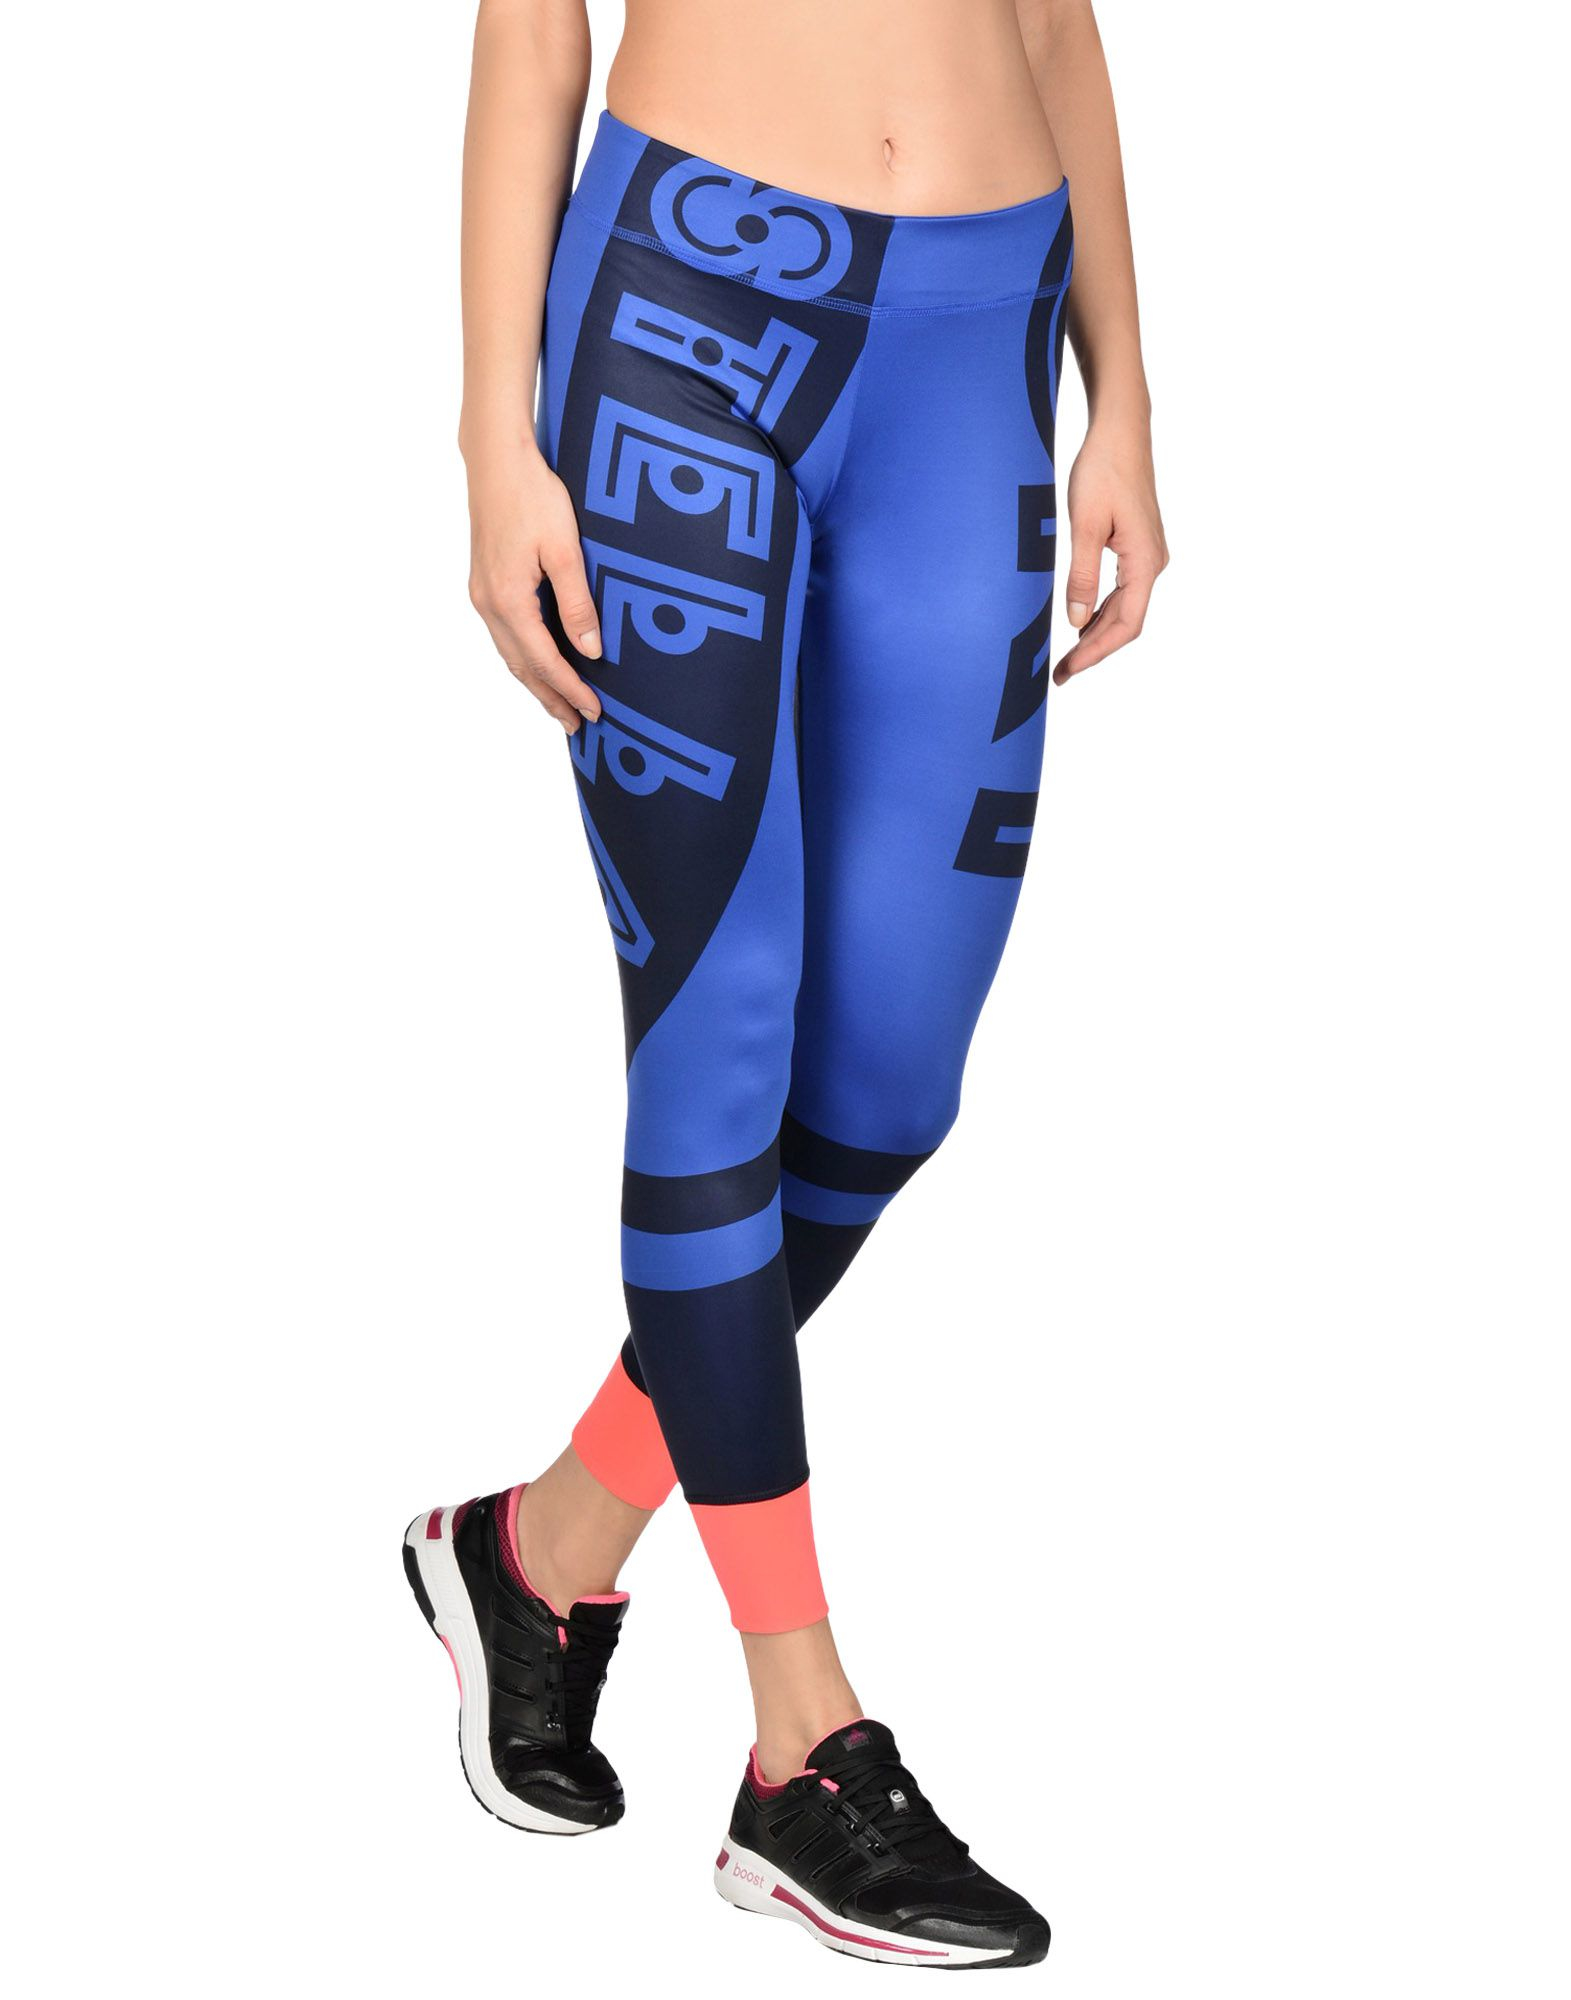 blue addidas leggings